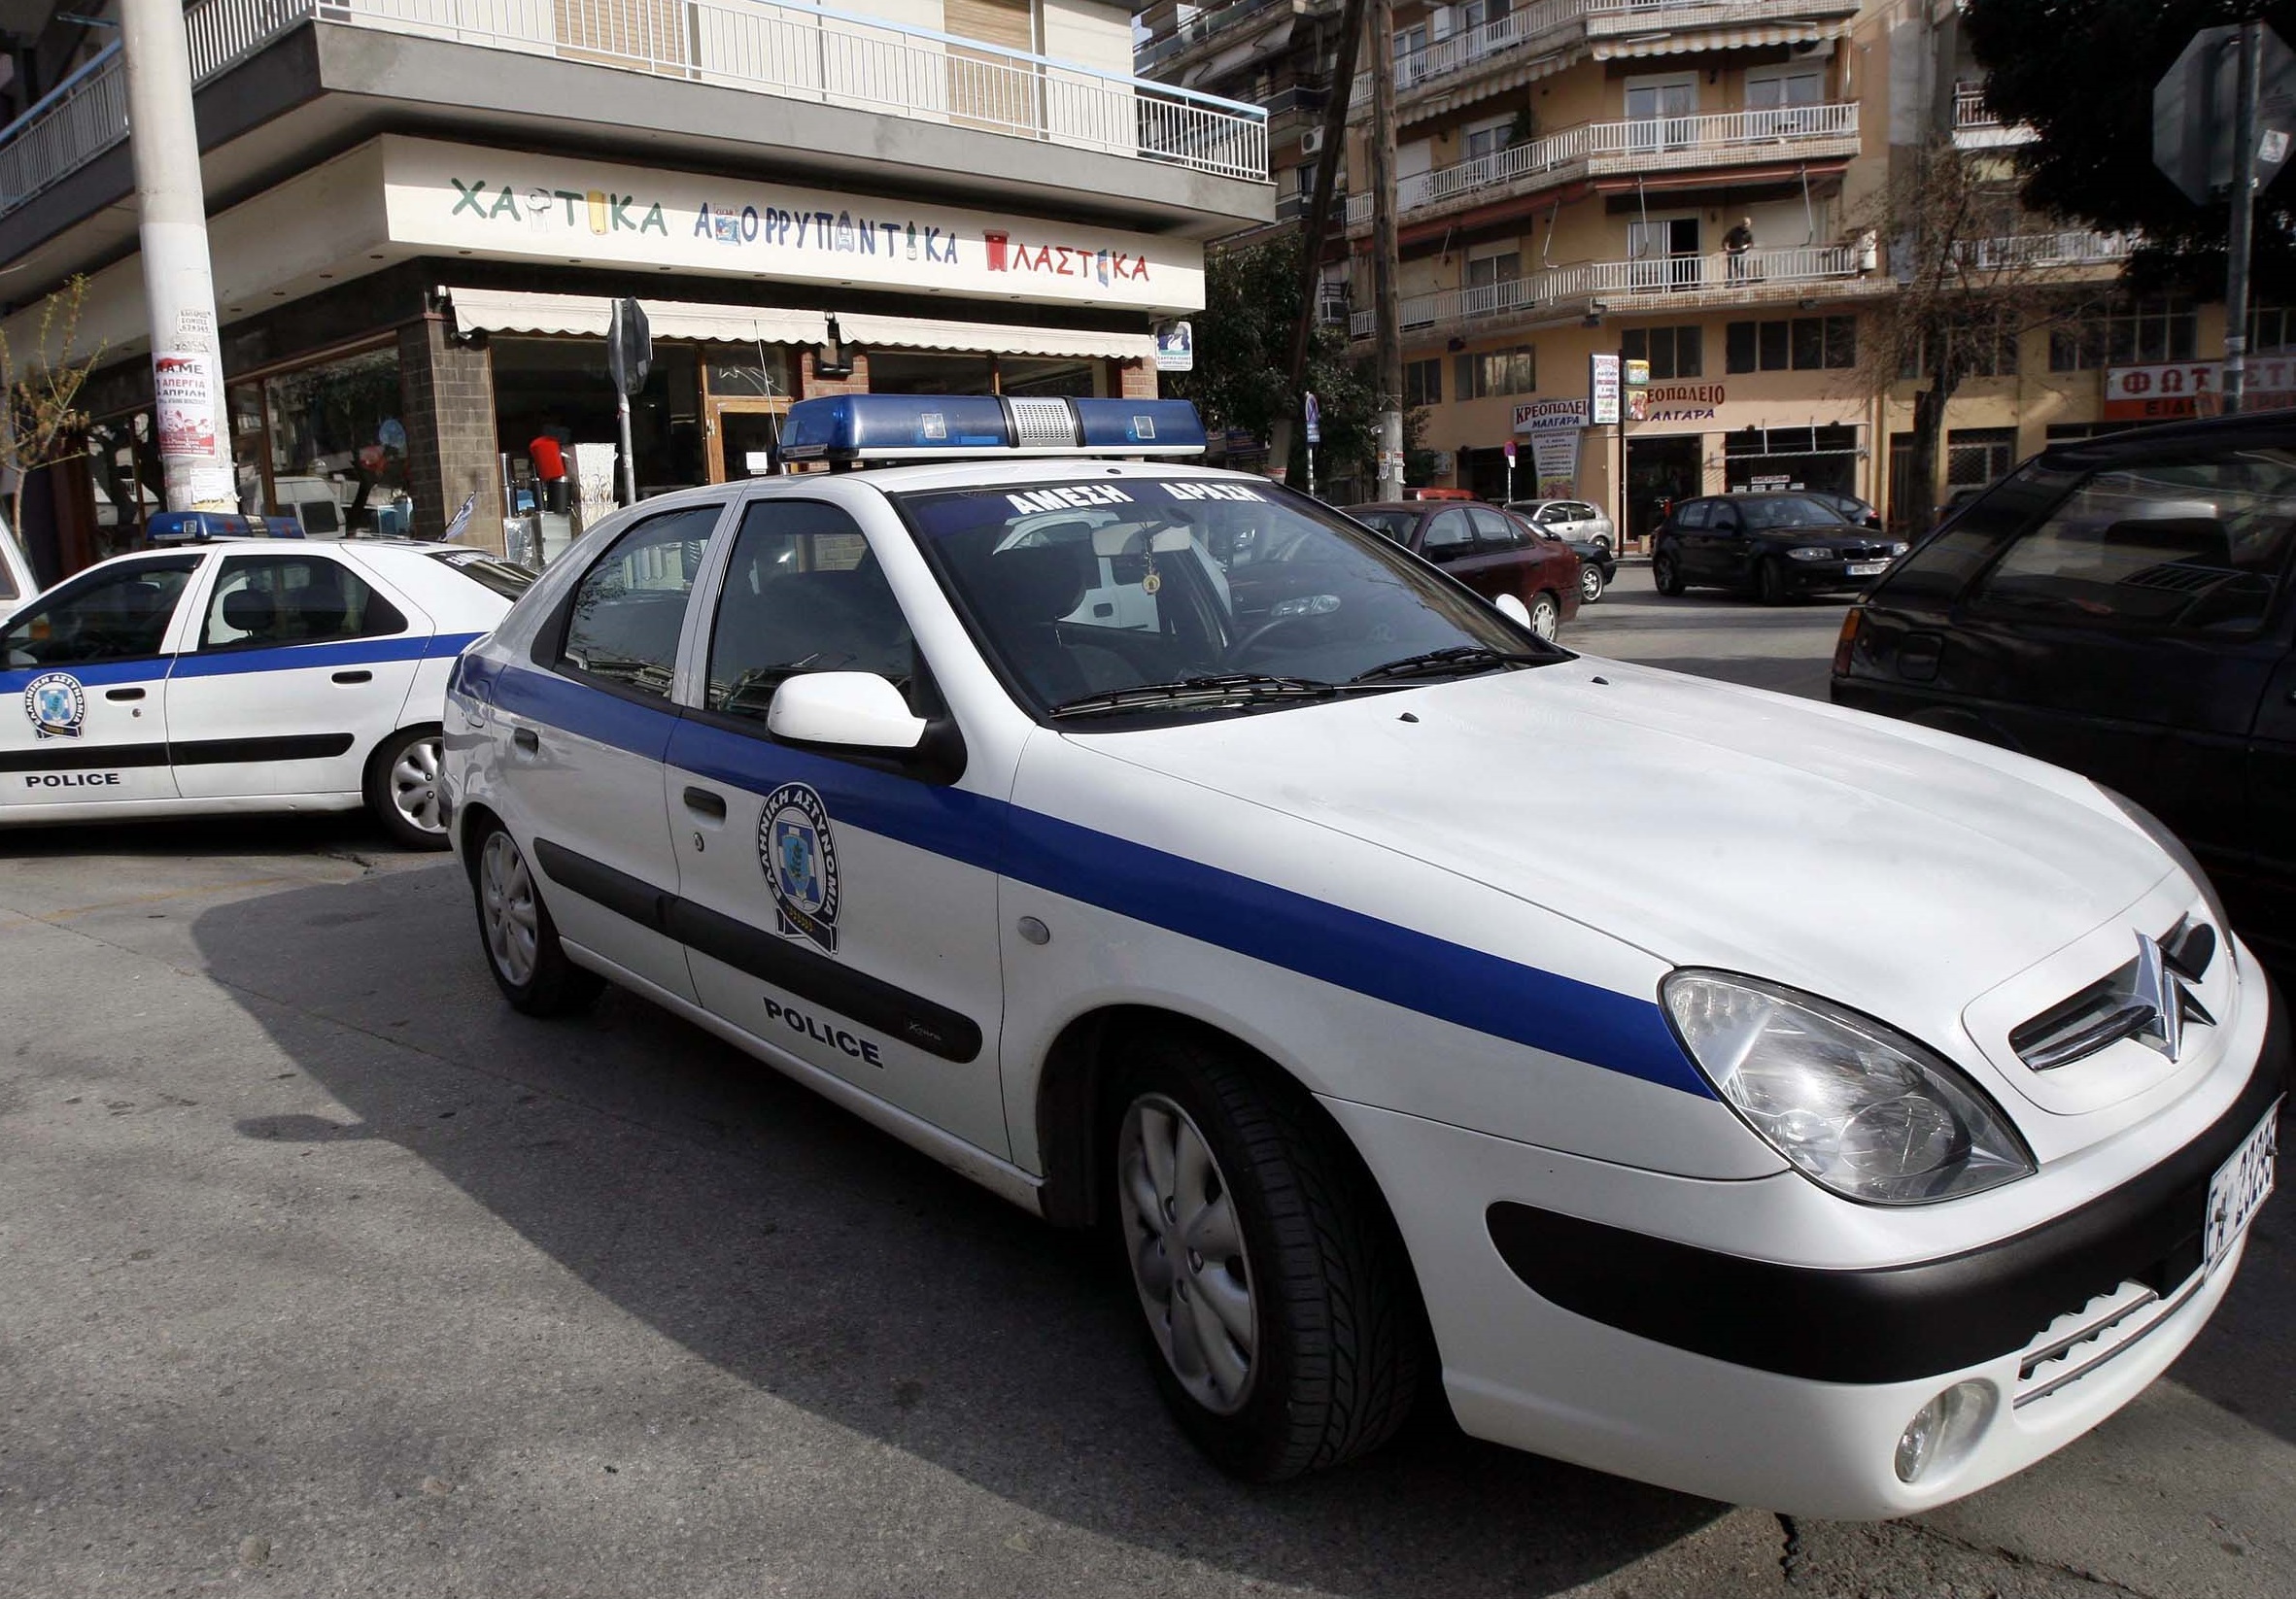 Υπόθεση ενδοοικογενειακής βίας στη Θεσσαλονίκη: «Ήρθε το παιδί να με προστατεύσει και χτύπησε και το παιδί»